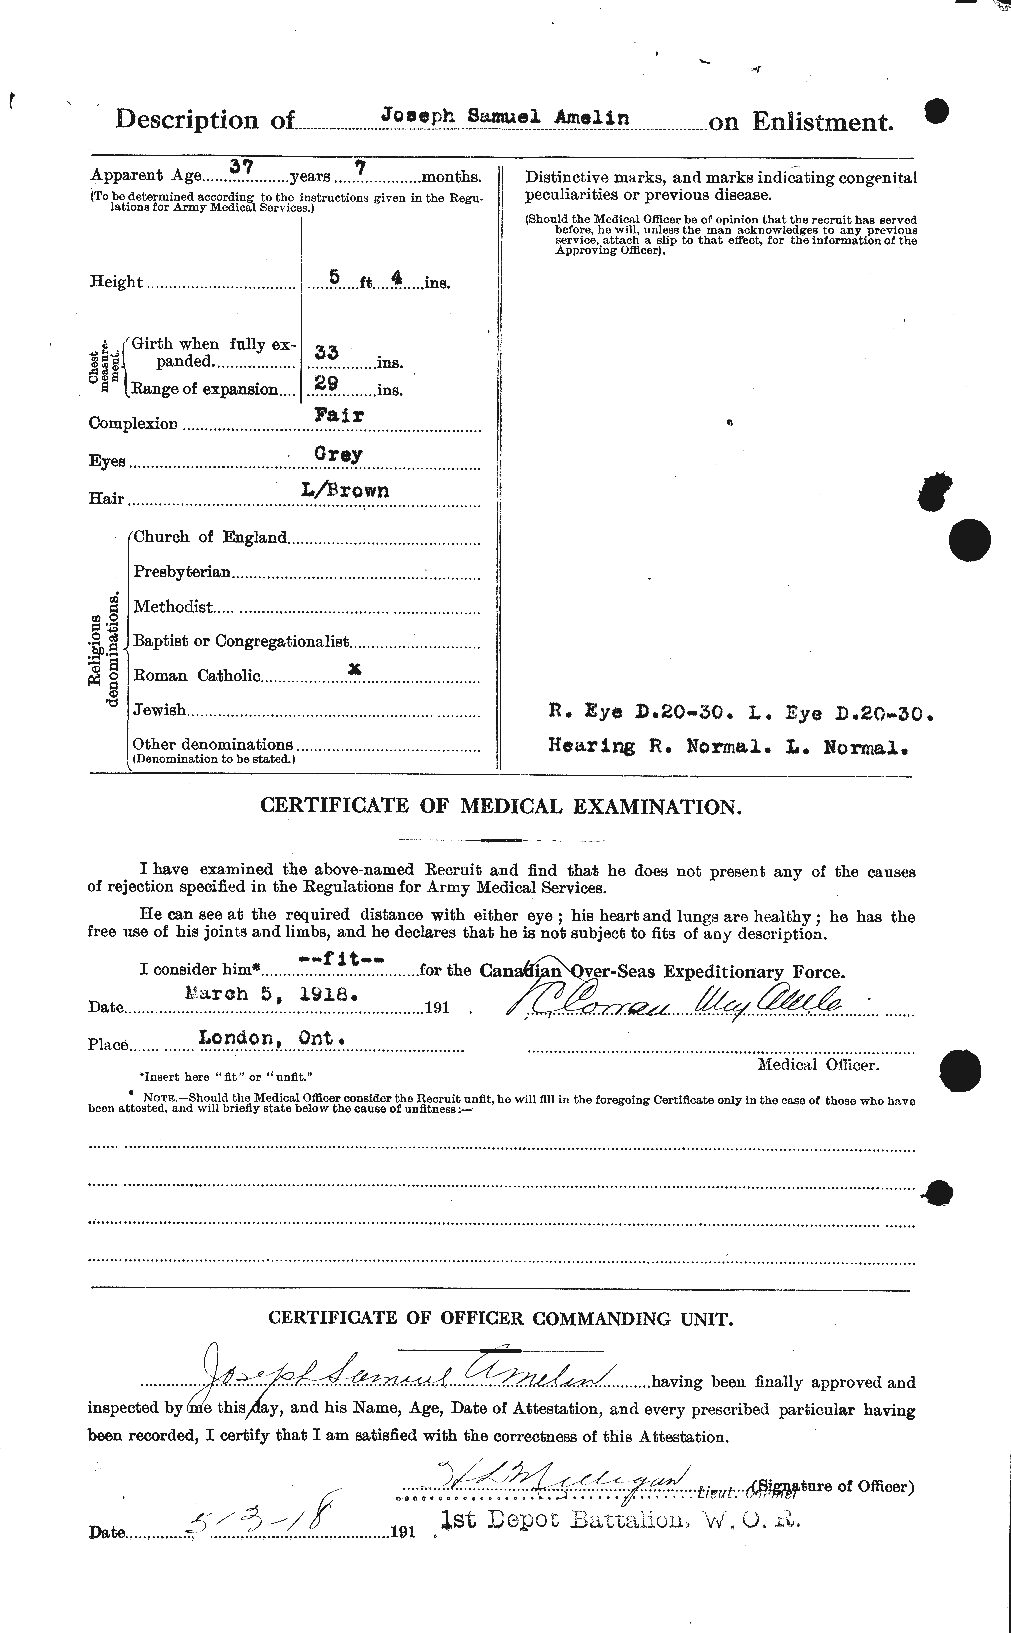 Dossiers du Personnel de la Première Guerre mondiale - CEC 208906b